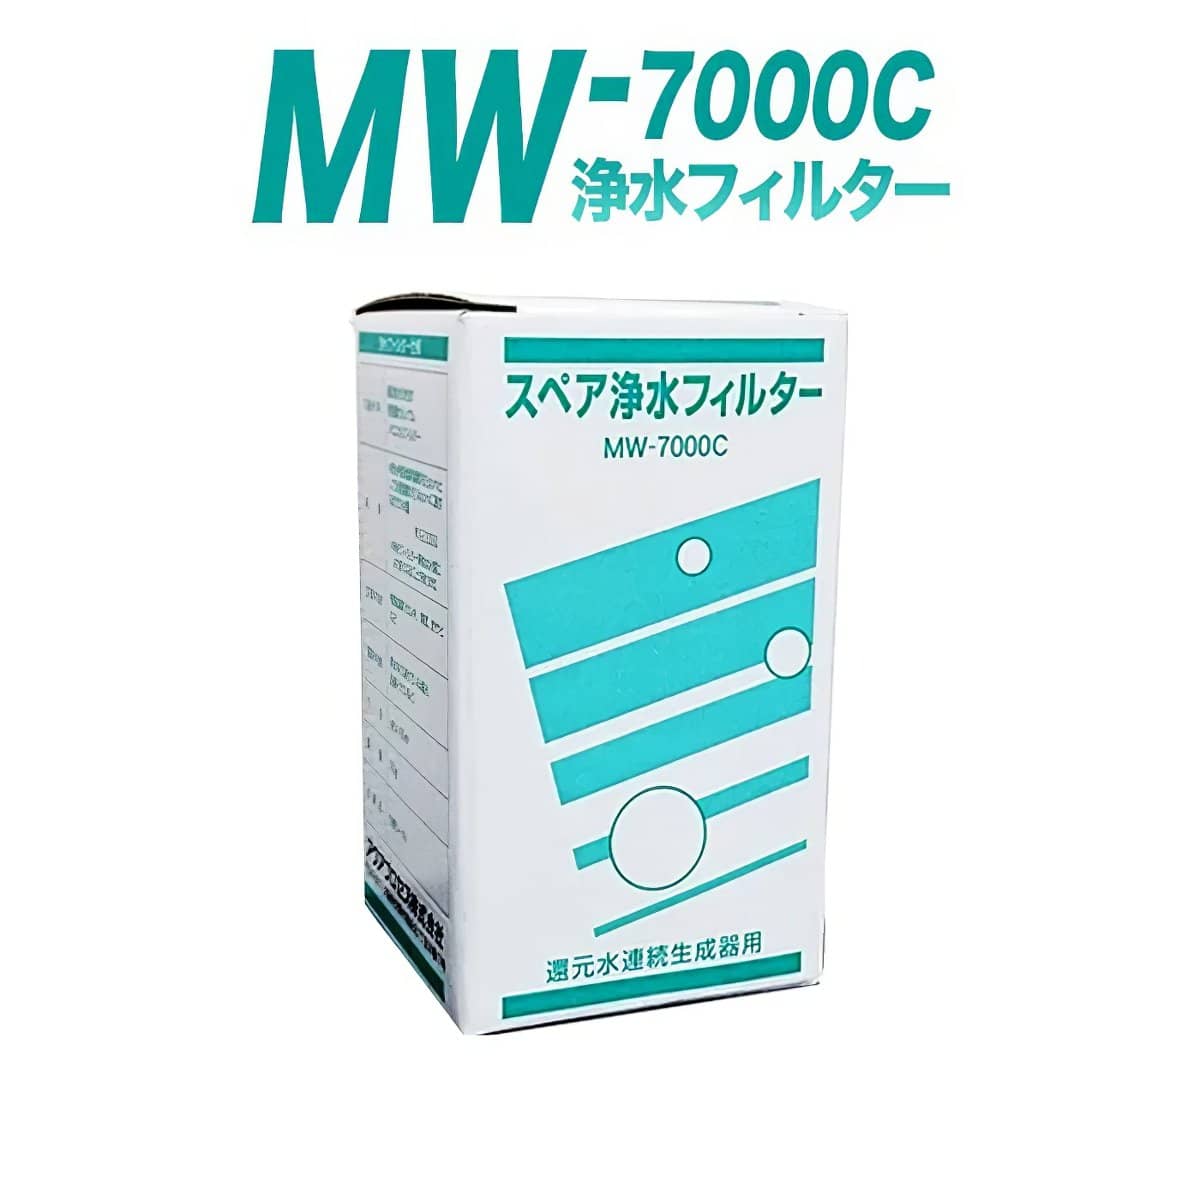 MW-7000C 繧ｹ繝壹い豬�豌ｴ繝輔ぅ繝ｫ繧ｿ繝ｼ 繧ｦ繧ｩ繝ｼ繧ｿ繝ｼ繧ｸ繝｣繝代Φ